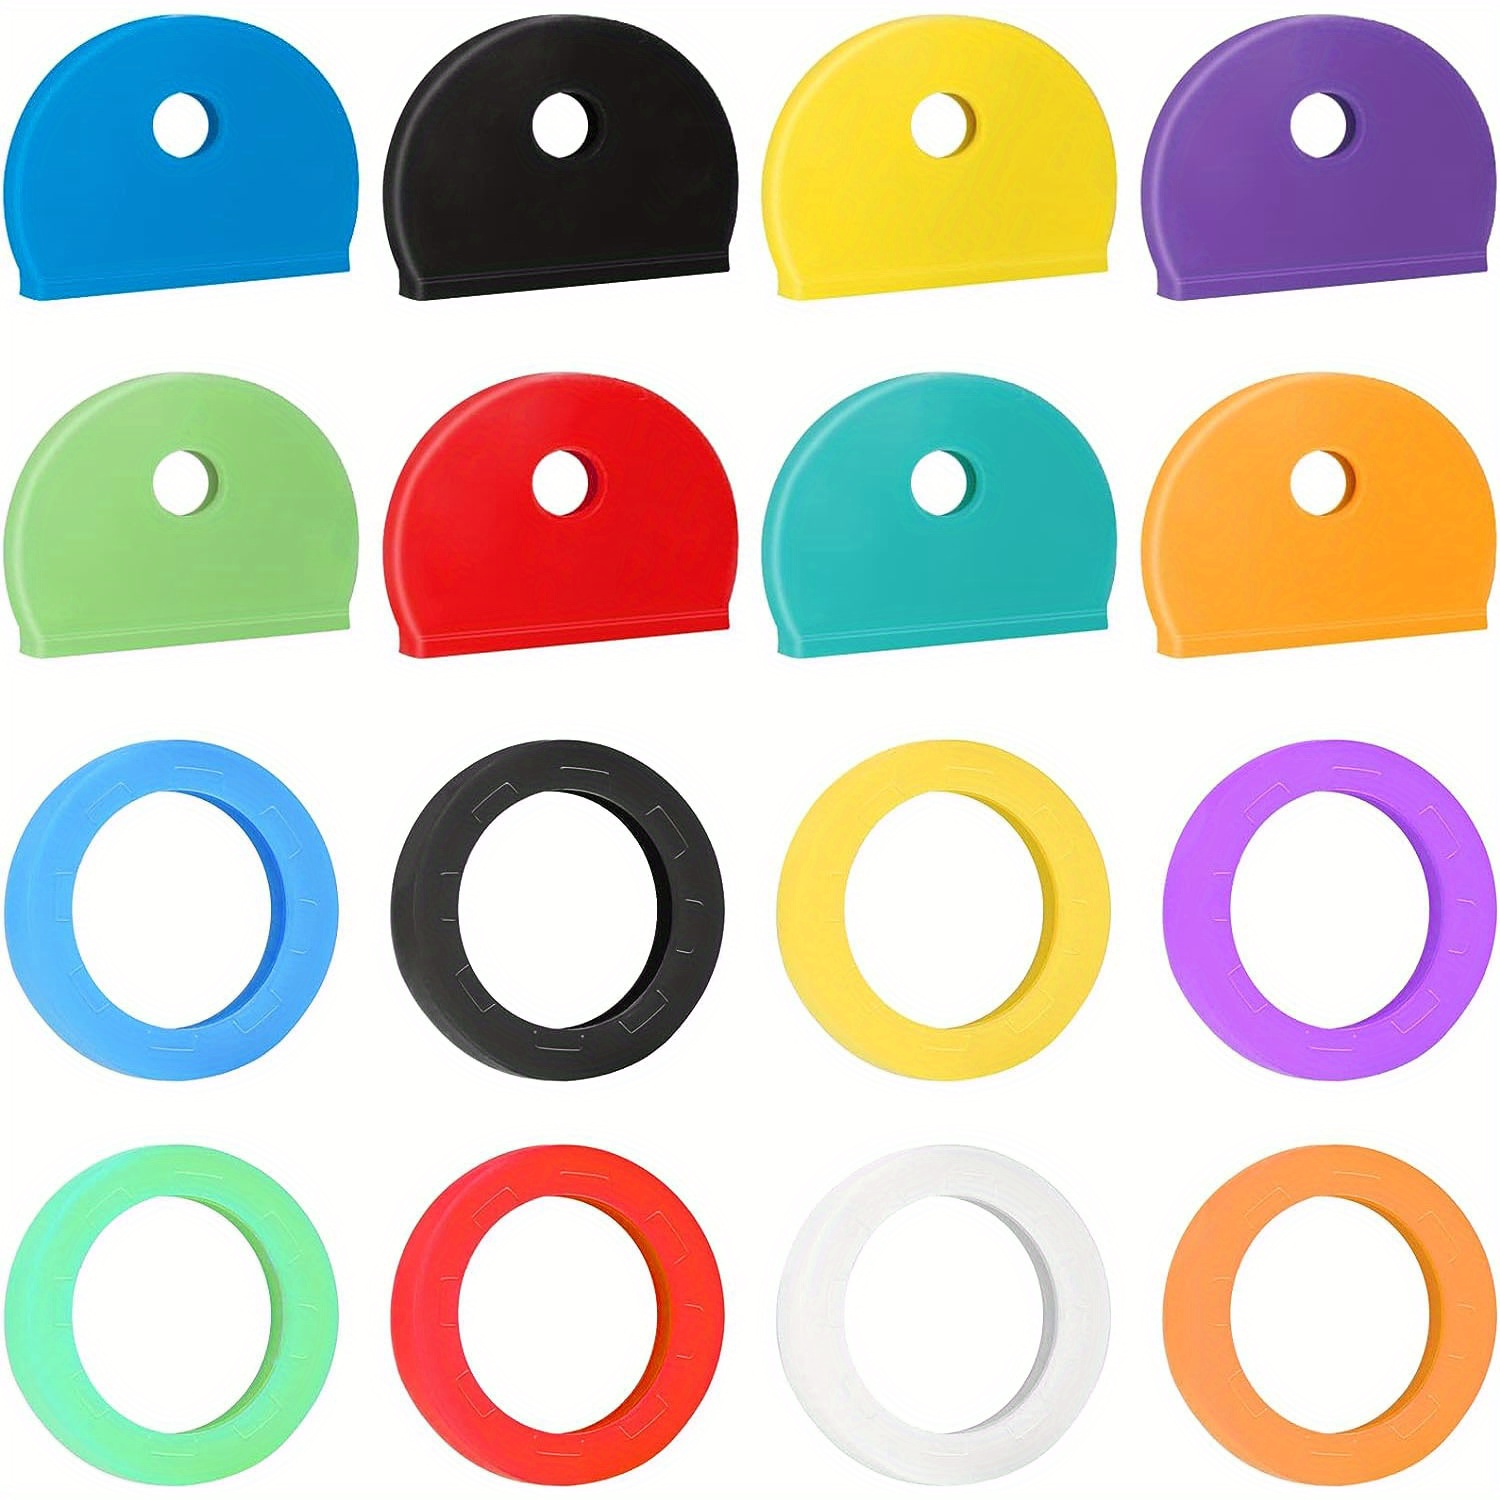 Plastic Key Labels Identifiers, Labels Keys Colors